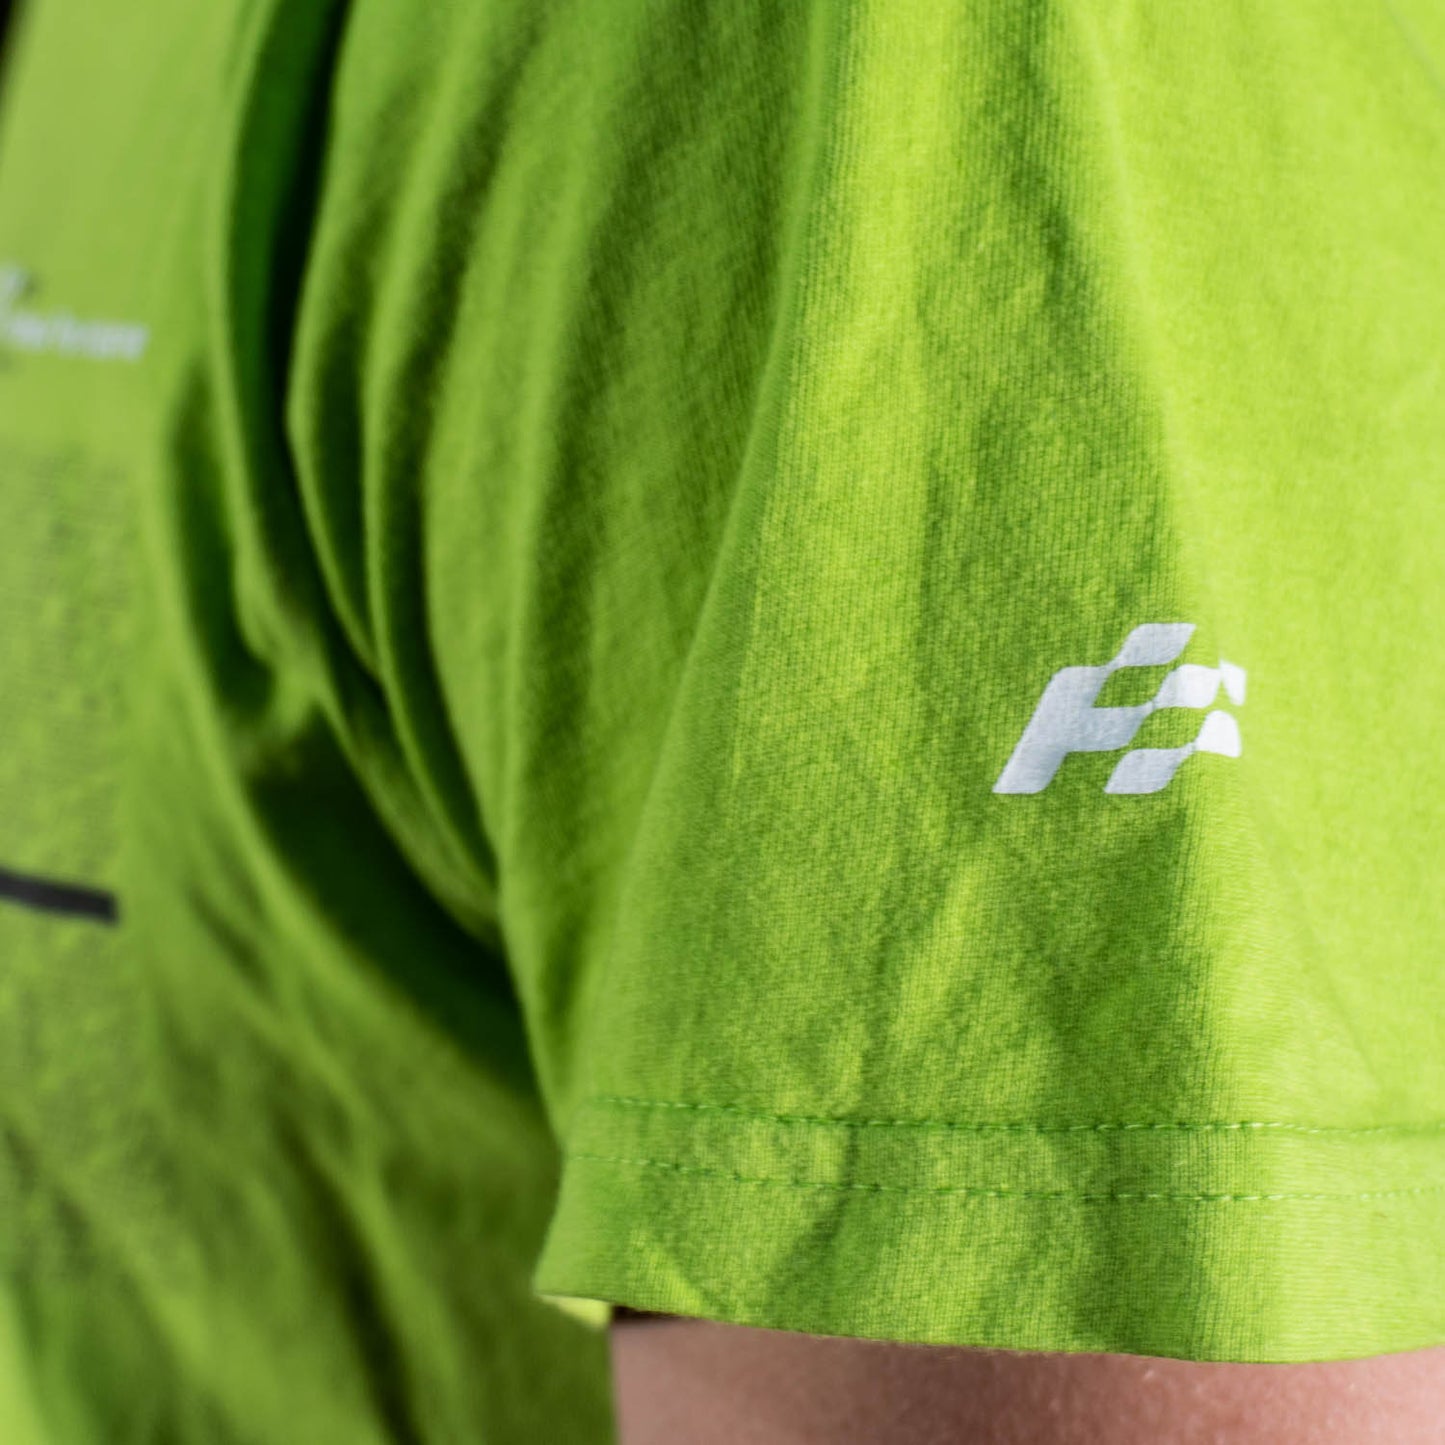 T-Shirt Verde con Logo - AF09